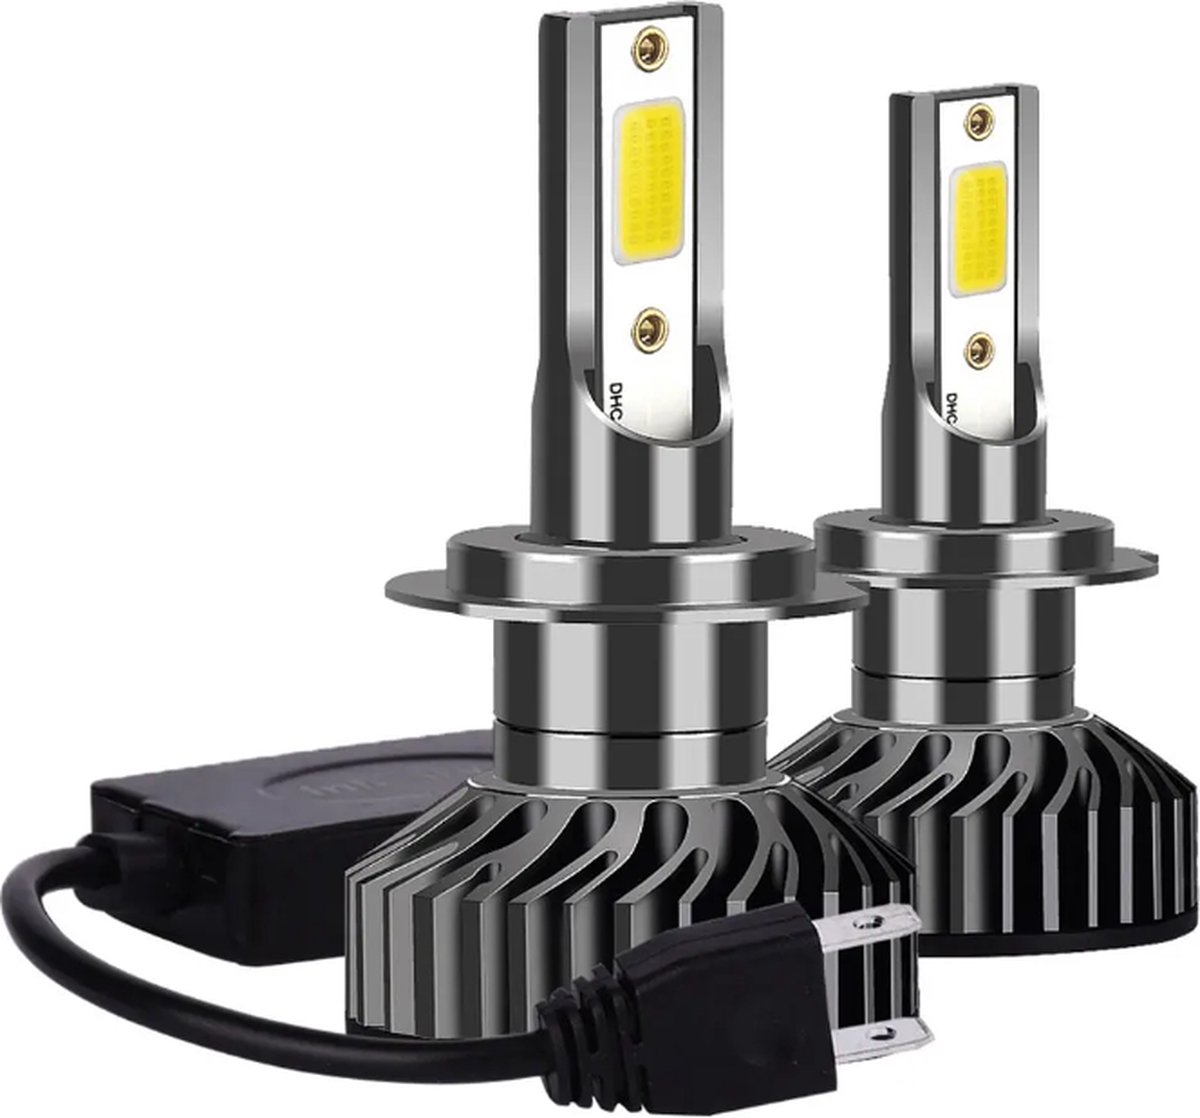 TLVX H7 55 Watt Canbus LED lampen – Storingsvrij – Koplampen – Auto - Motor - Headlights - 6000K wit licht – Autoverlichting – 12V – 55w halogeen vervanger - Dimlicht – Grootlicht – 32.000 Lumen (2 stuks)